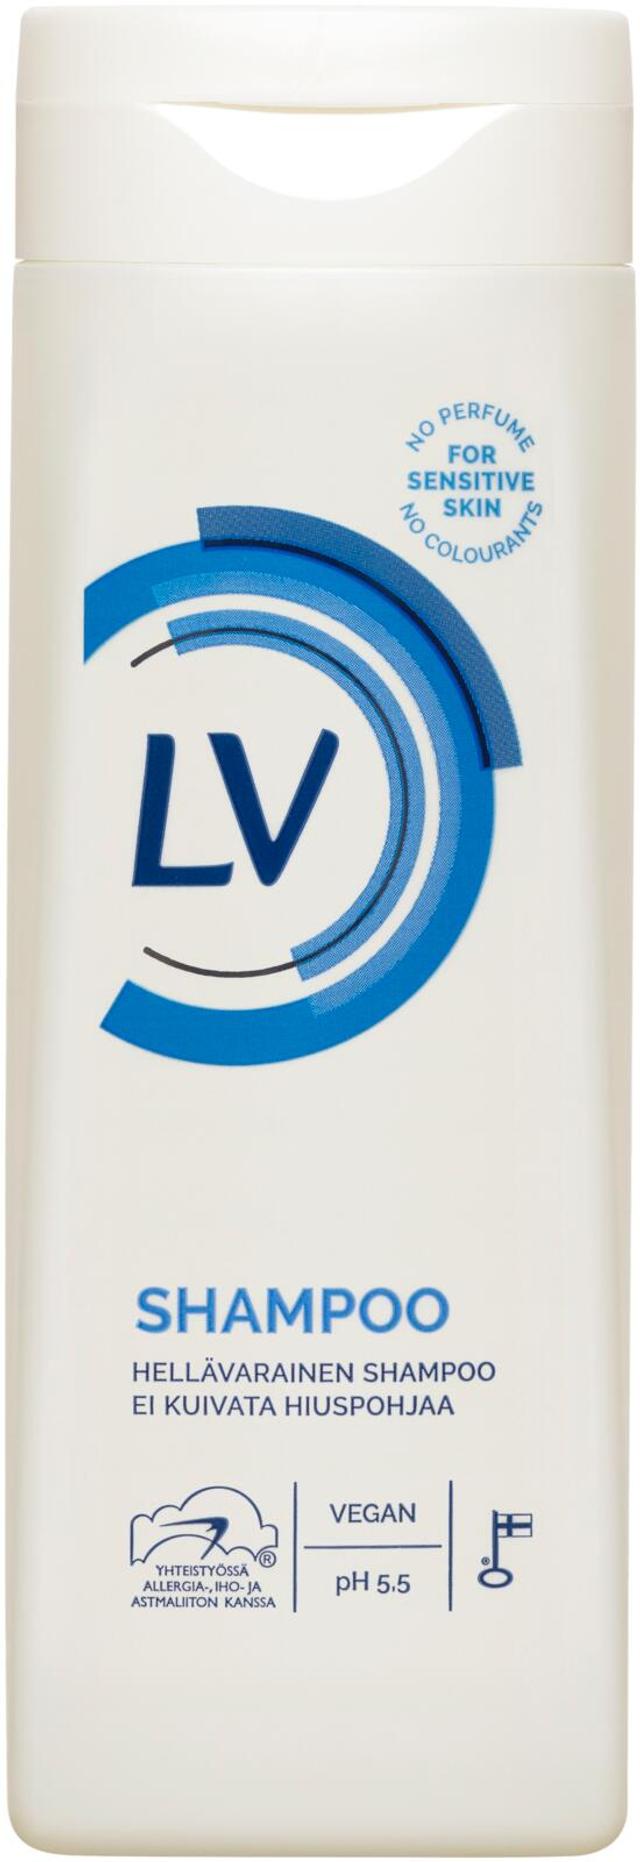 LV 250ml shampoo